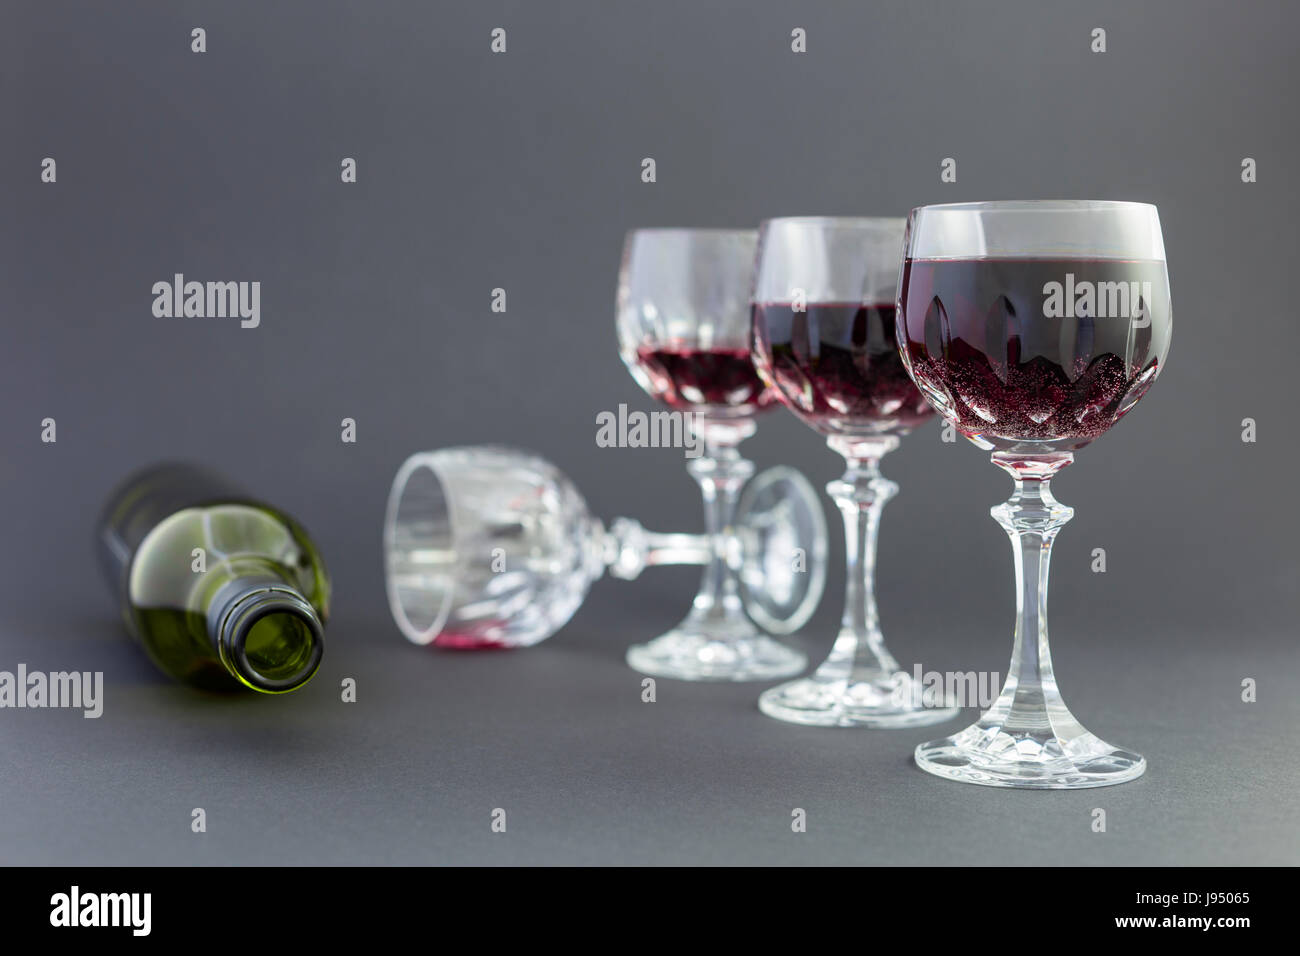 Concept de la consommation d'alcool, l'alcoolisme et l'abus par une ligne de beaux verres de cristal rempli de vin rouge et une bouteille vide. Banque D'Images